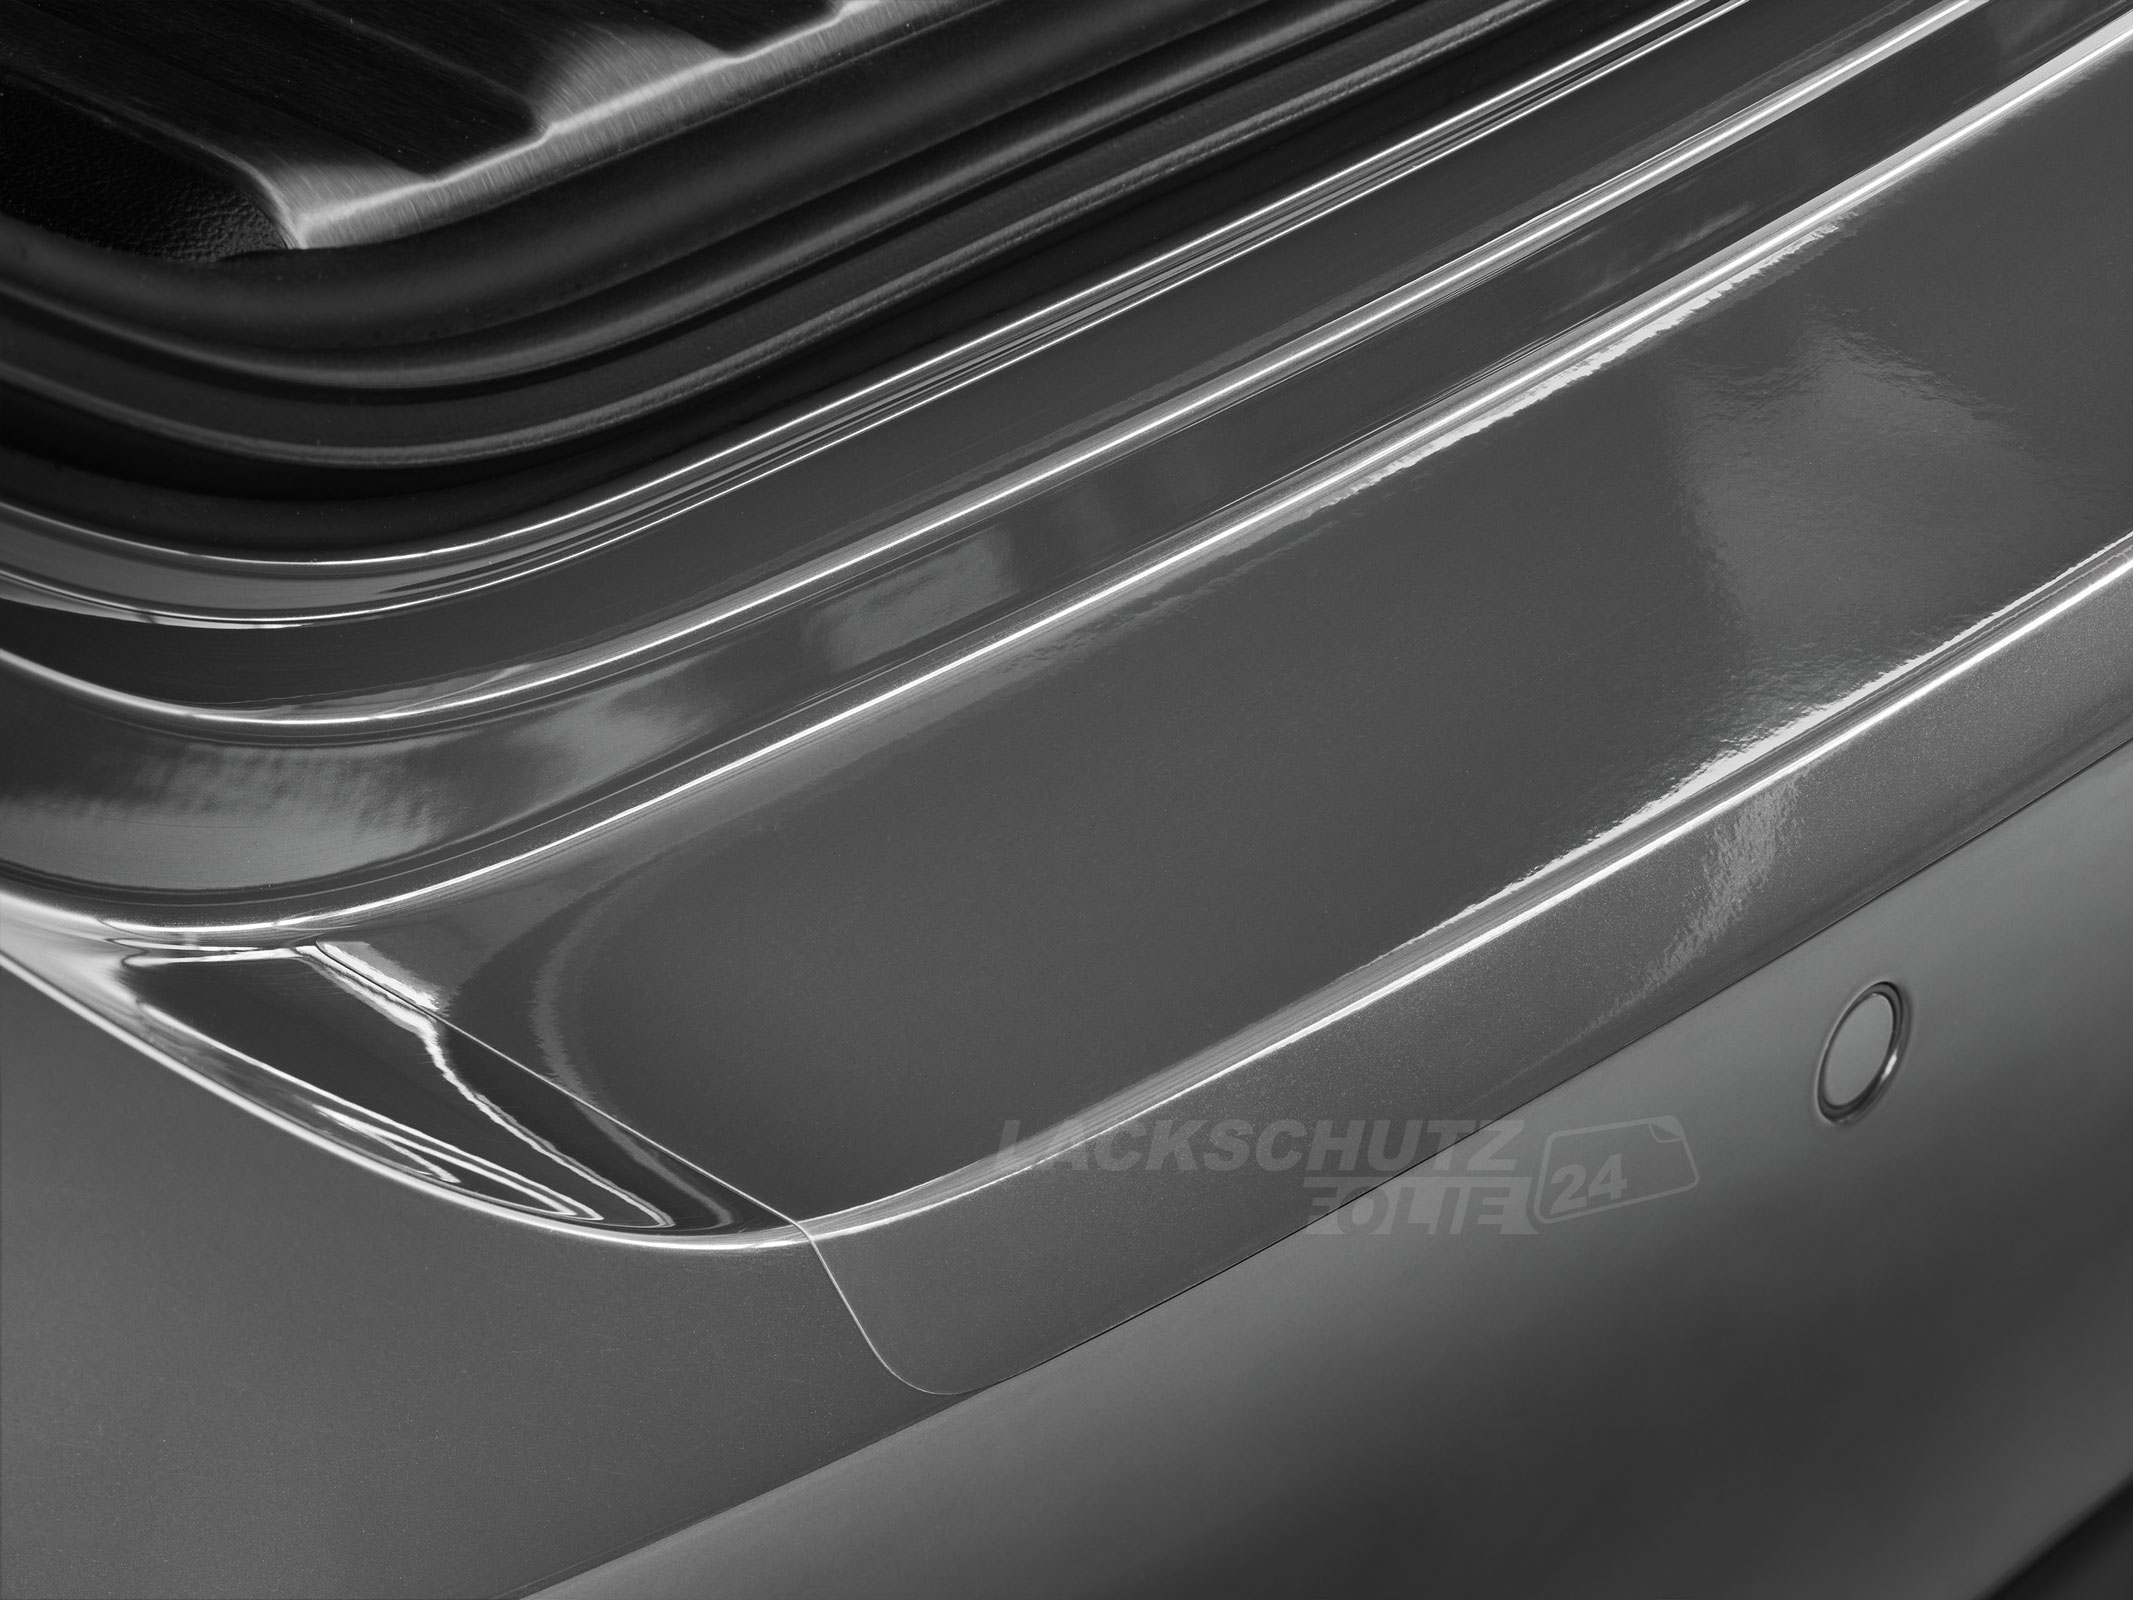 Ladekantenschutzfolie - Transparent Glatt Hochglänzend 150 µm stark für BMW 5er Touring (Kombi) Typ F11, BJ 09/2010-05/2017